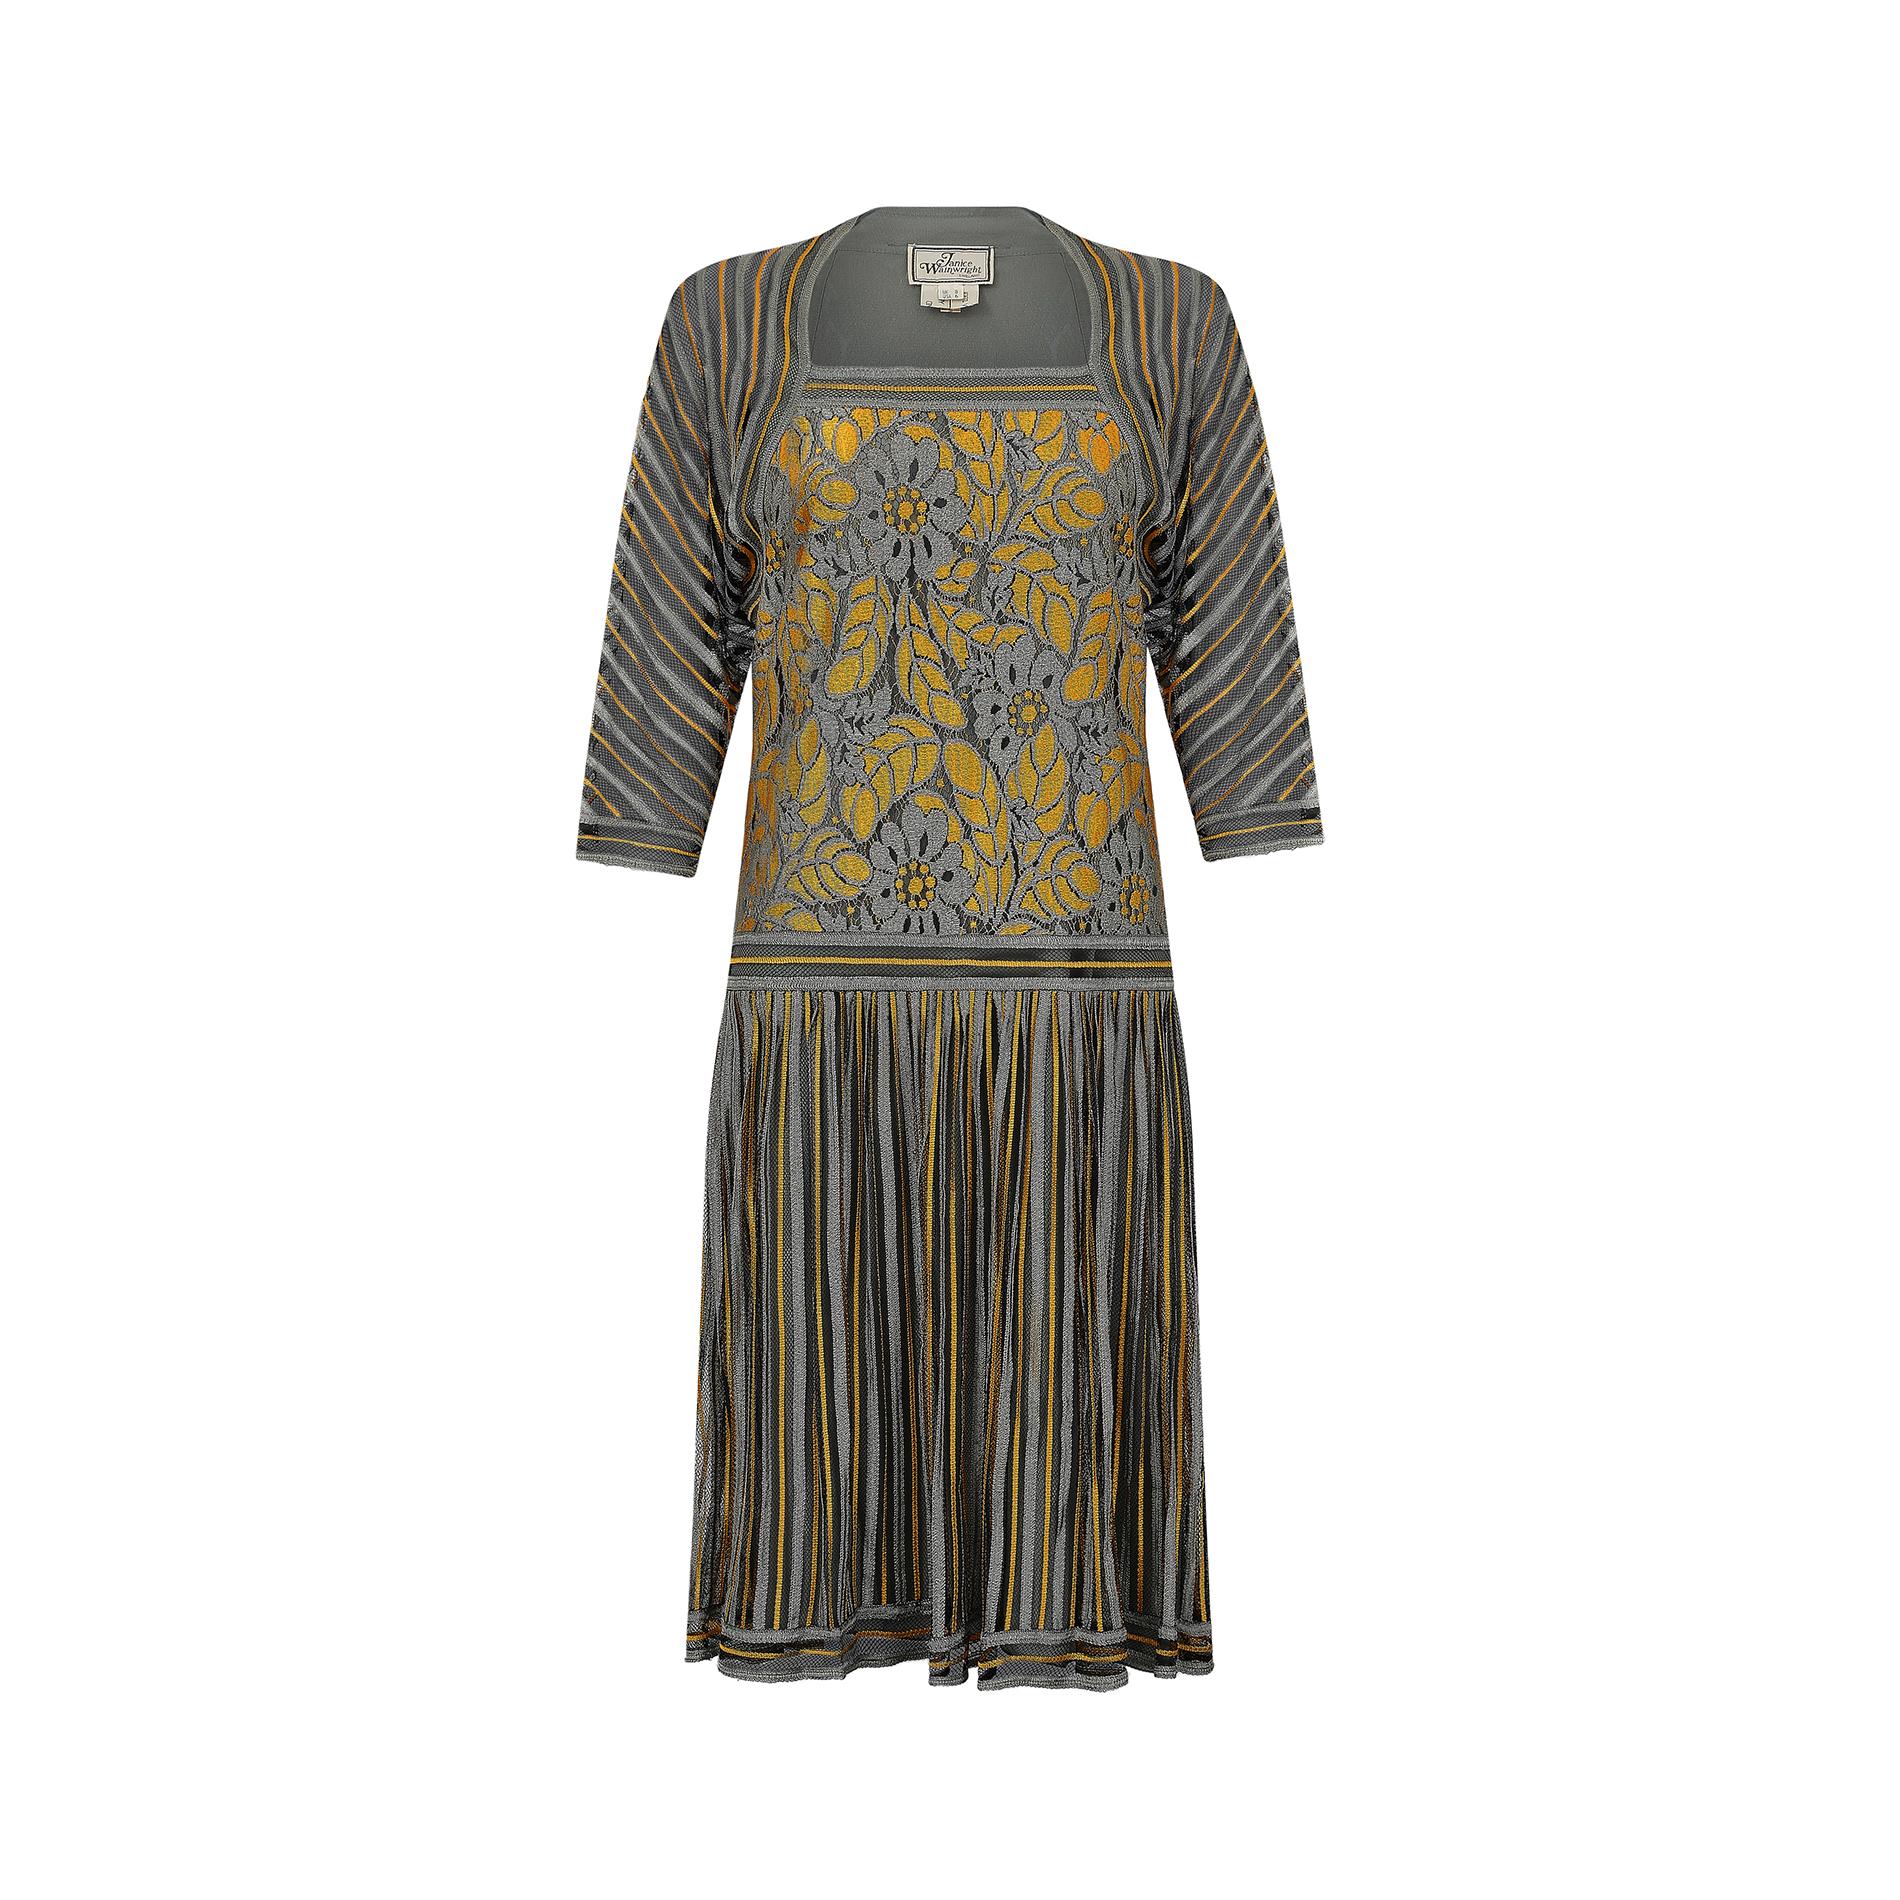 1970er Jahre Janice Wainwright 1920er Jahre Stil Flapper Kleid.  Dies ist ein wunderbares Beispiel für Janice Wainwrights frühes Werk, das von Sammlern und Museen gleichermaßen begehrt ist.  Sie gründete 1970 ihr eigenes Unternehmen, nachdem sie in